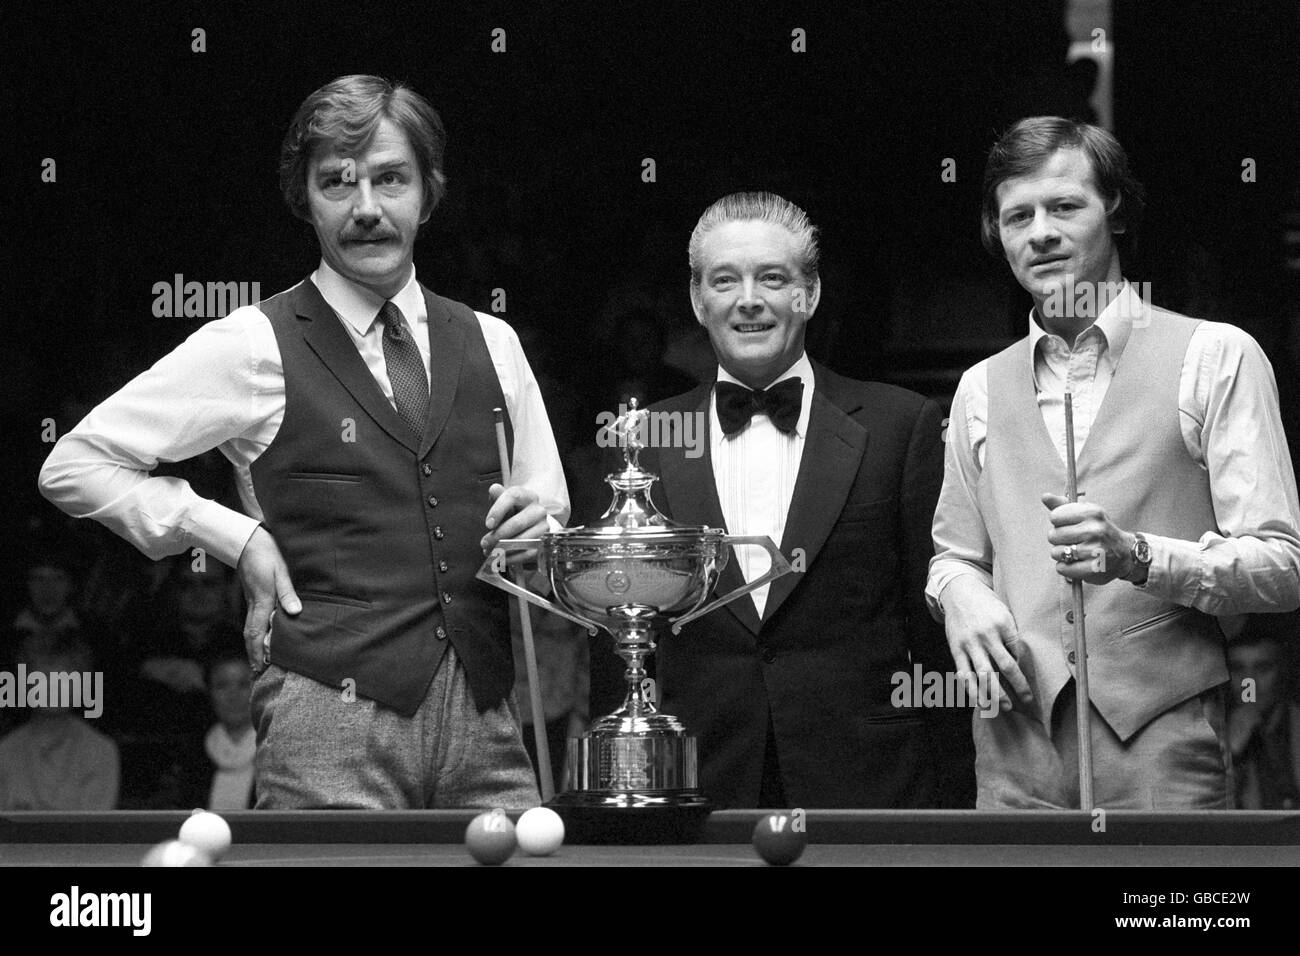 Aux finales du Championnat du monde de Snooker, posant avec le trophée sont le champion canadien Cliff Thorburn (à gauche) et Alex Higgins (à droite) flanquant l'arbitre John Street. Banque D'Images